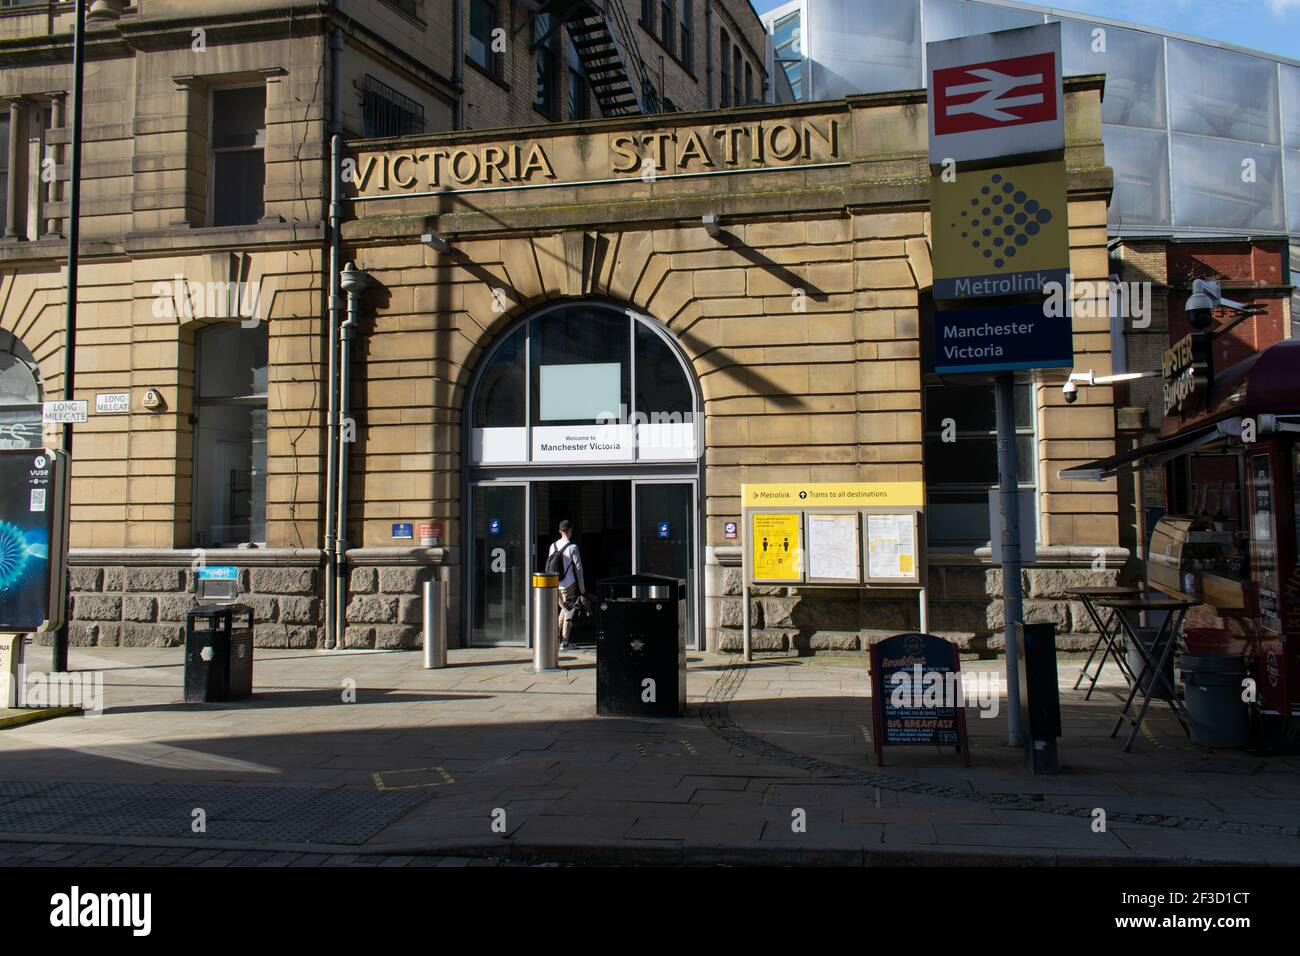 Ingresso alla stazione ferroviaria di Manchester Victoria con ingresso passeggeri e cartello per Intercity e Metrolink, Greater Manchester, UK Foto Stock